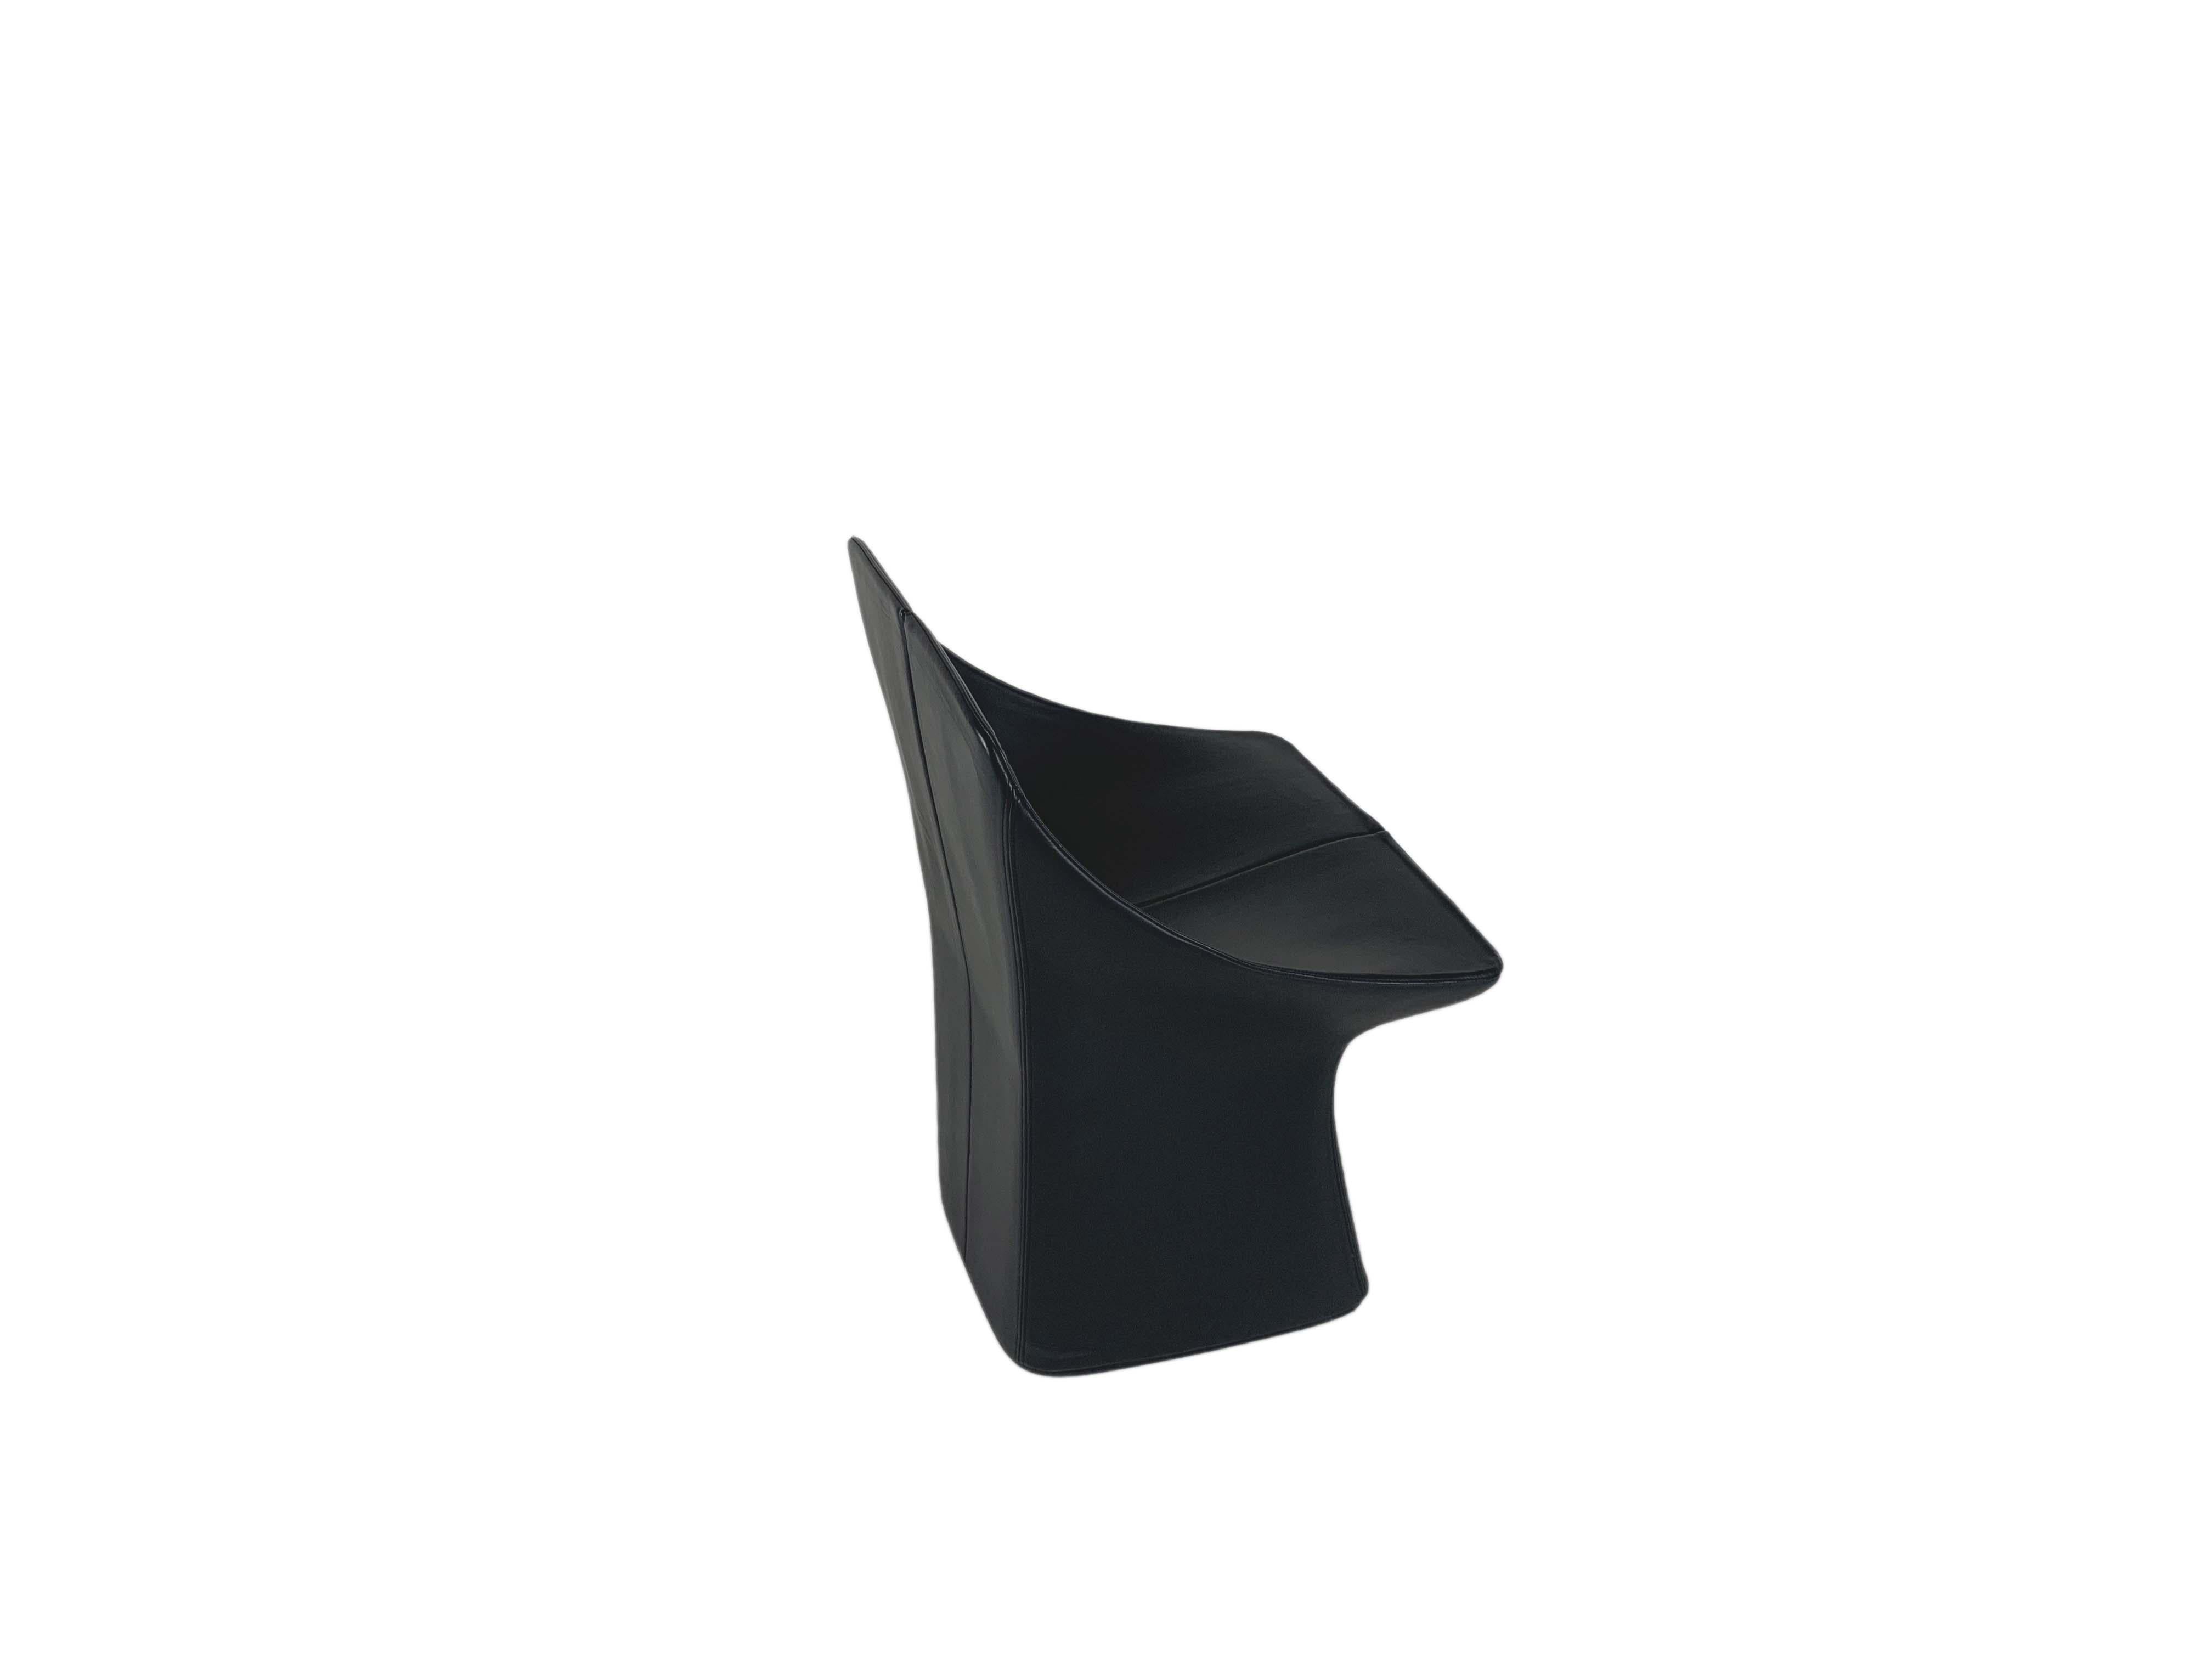 La chaise Giulietta est un produit conçu par Franco Poli pour Bernini en 2005. La ligne de produits est essentielle, avec des proportions compactes et enveloppantes pour un confort total. La structure, constituée d'une double coque en mousse moulée